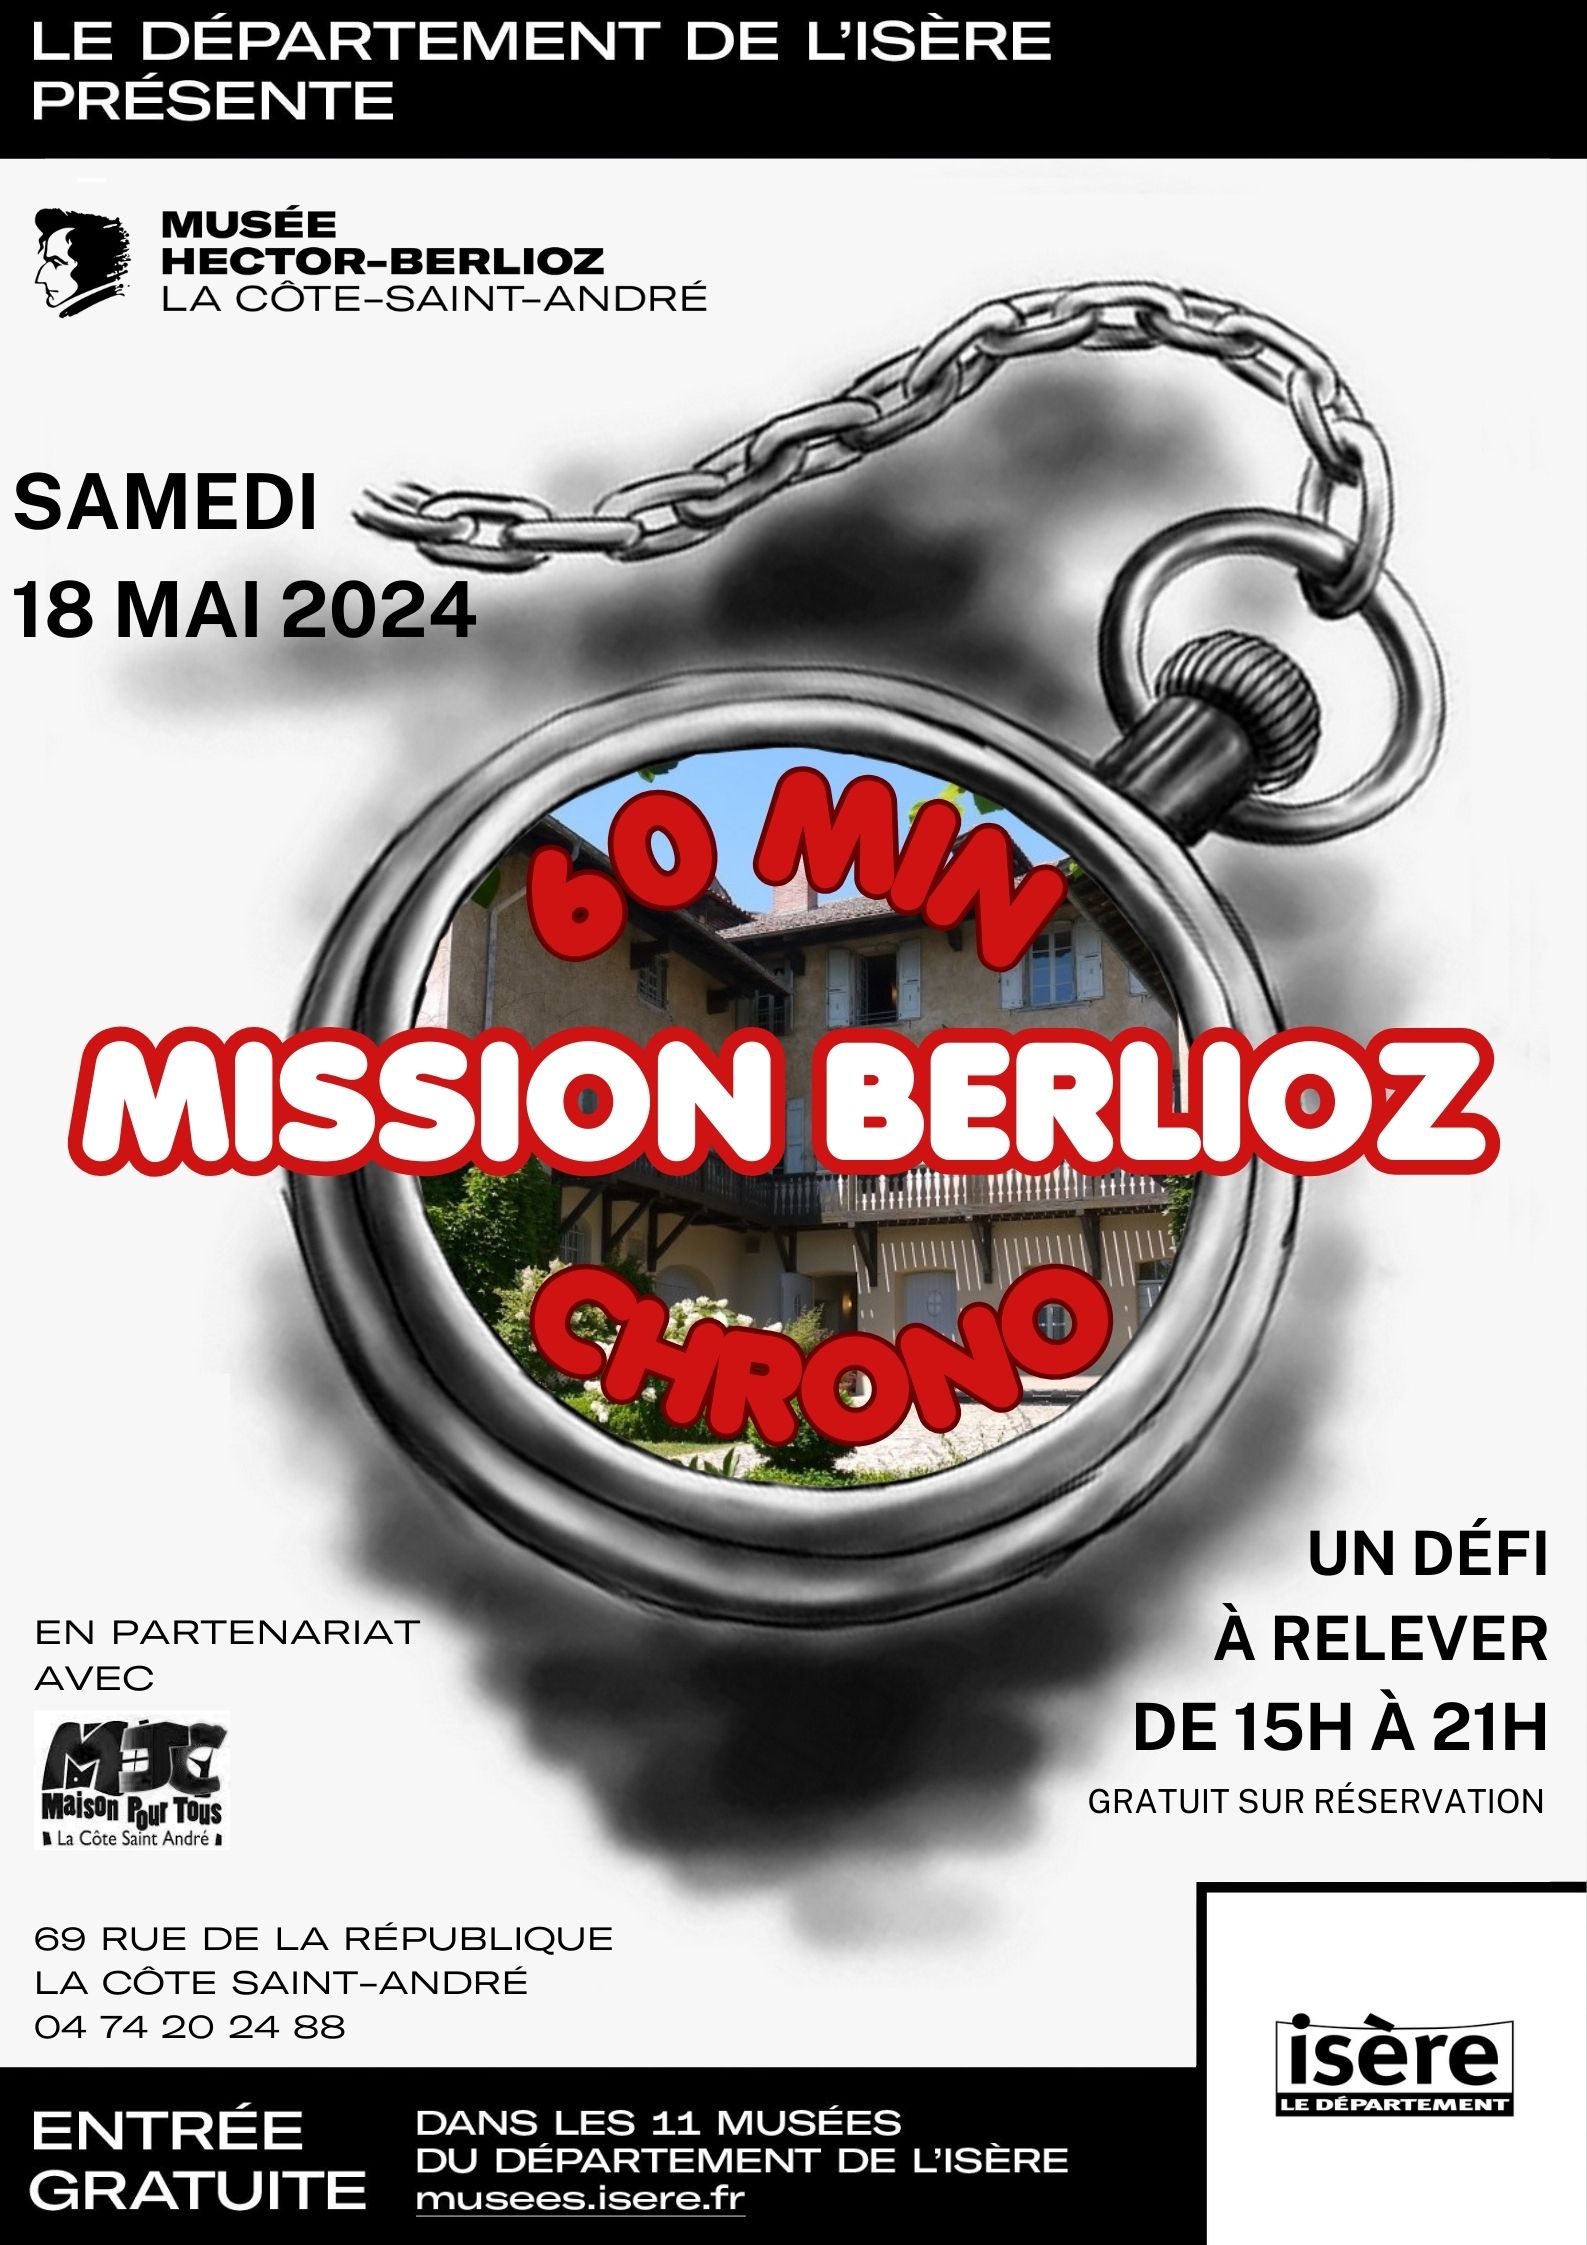 Enquête chronométrée - Mission Berlioz en 60 min chrono !